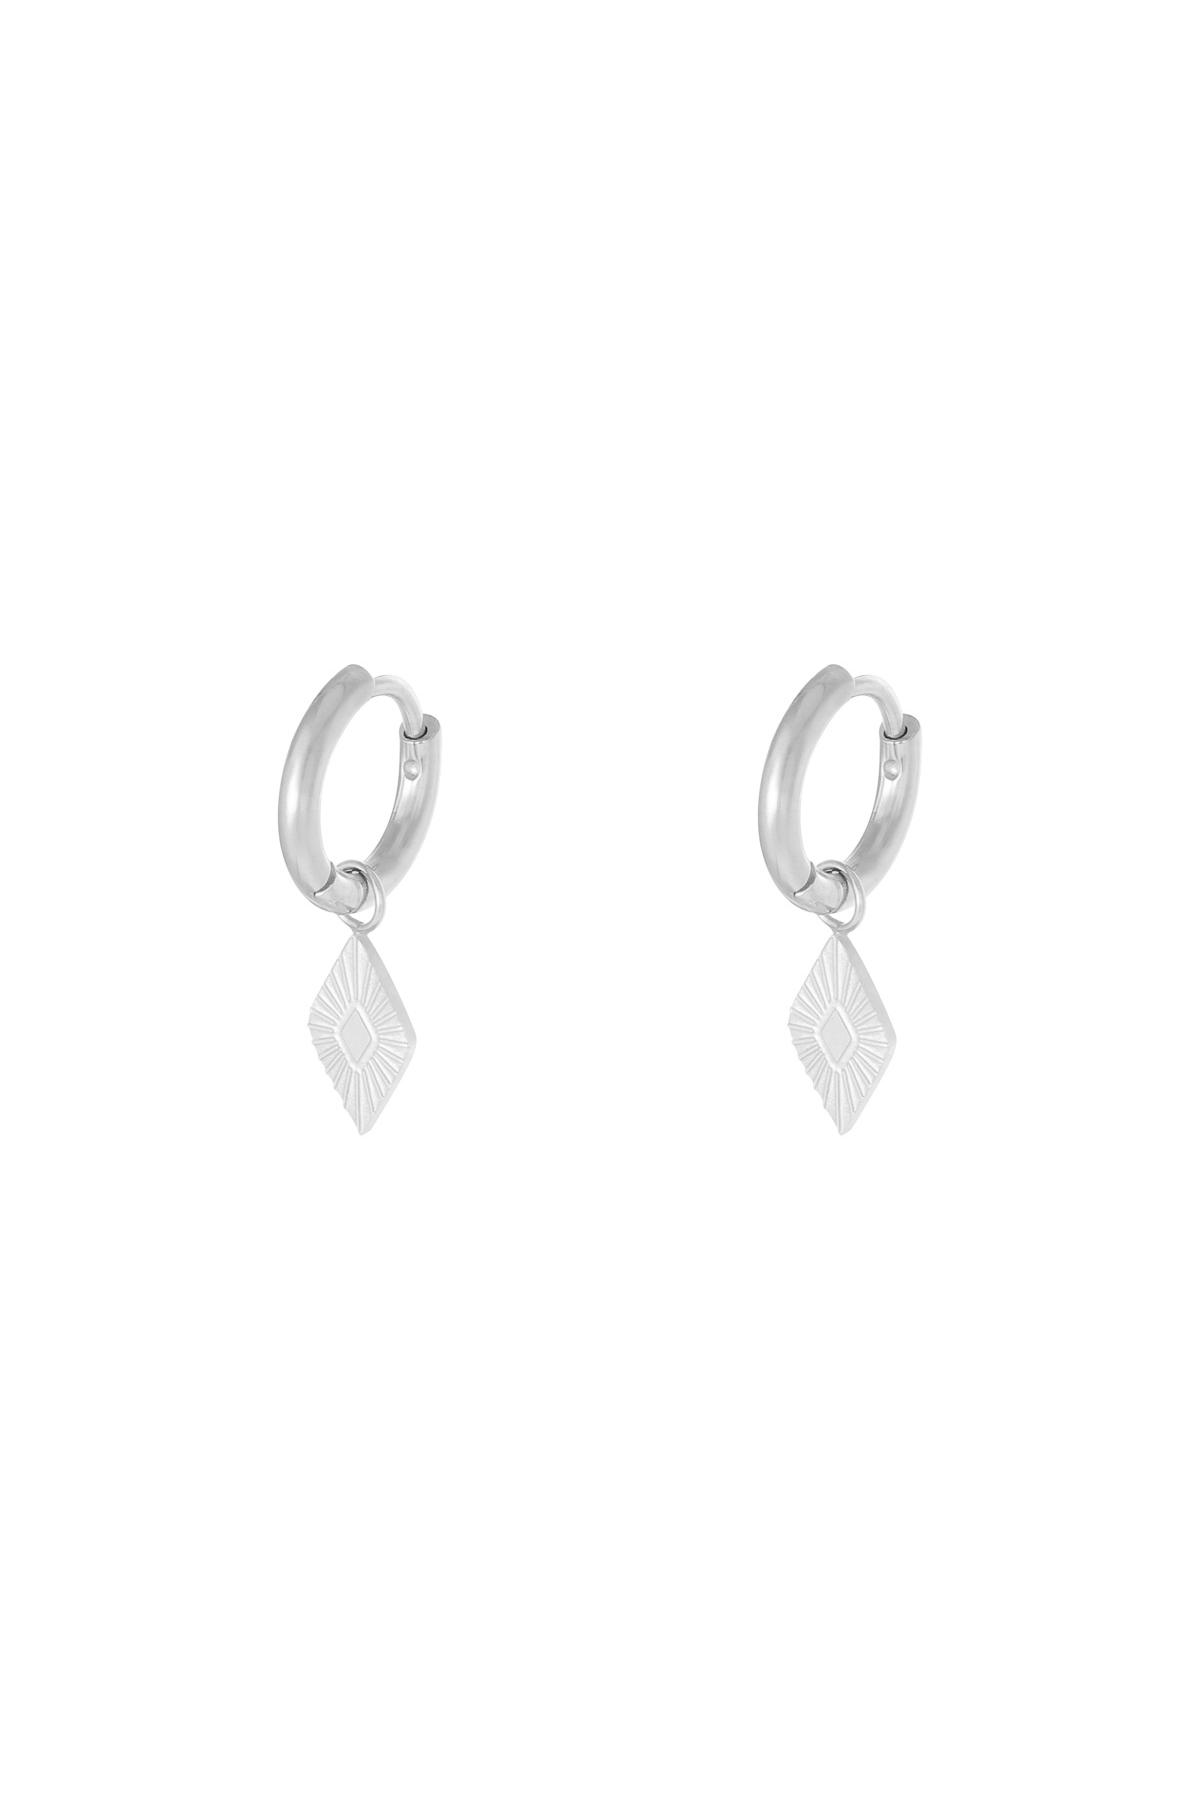 Silver / Earrings Diamond Silver Stainless Steel 